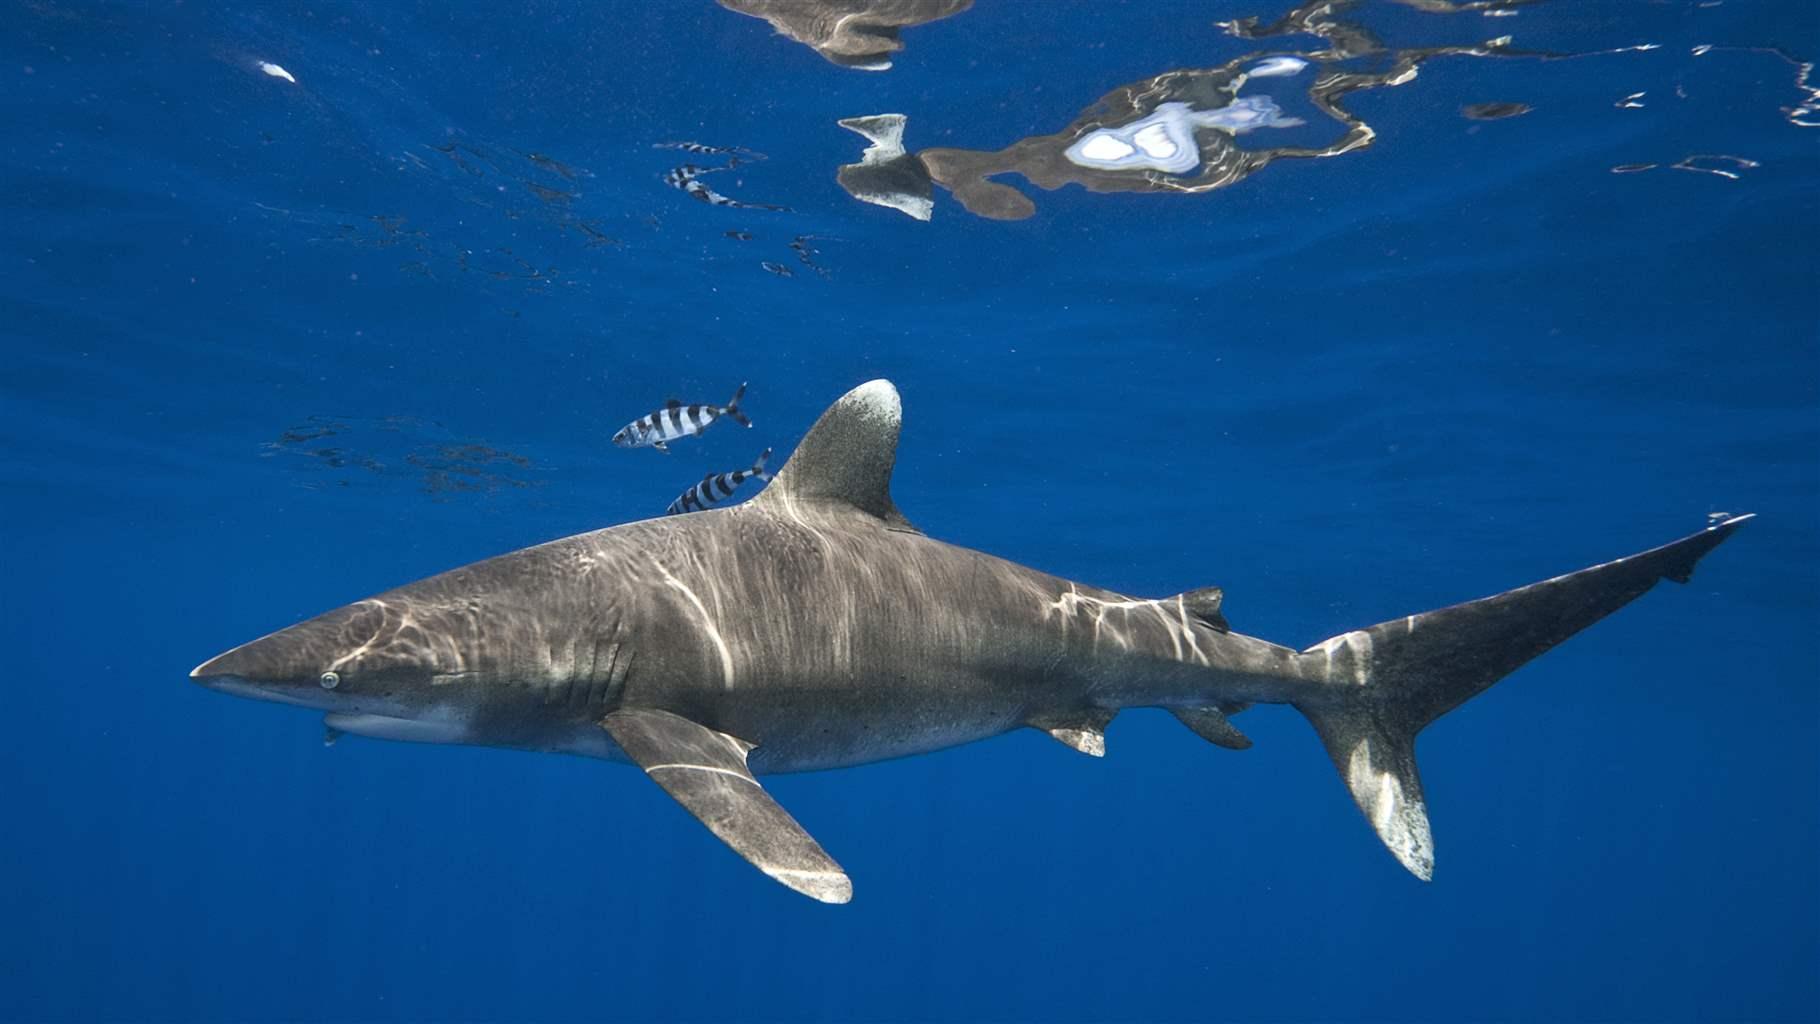 Oceanic whitetip sharks in the ocean